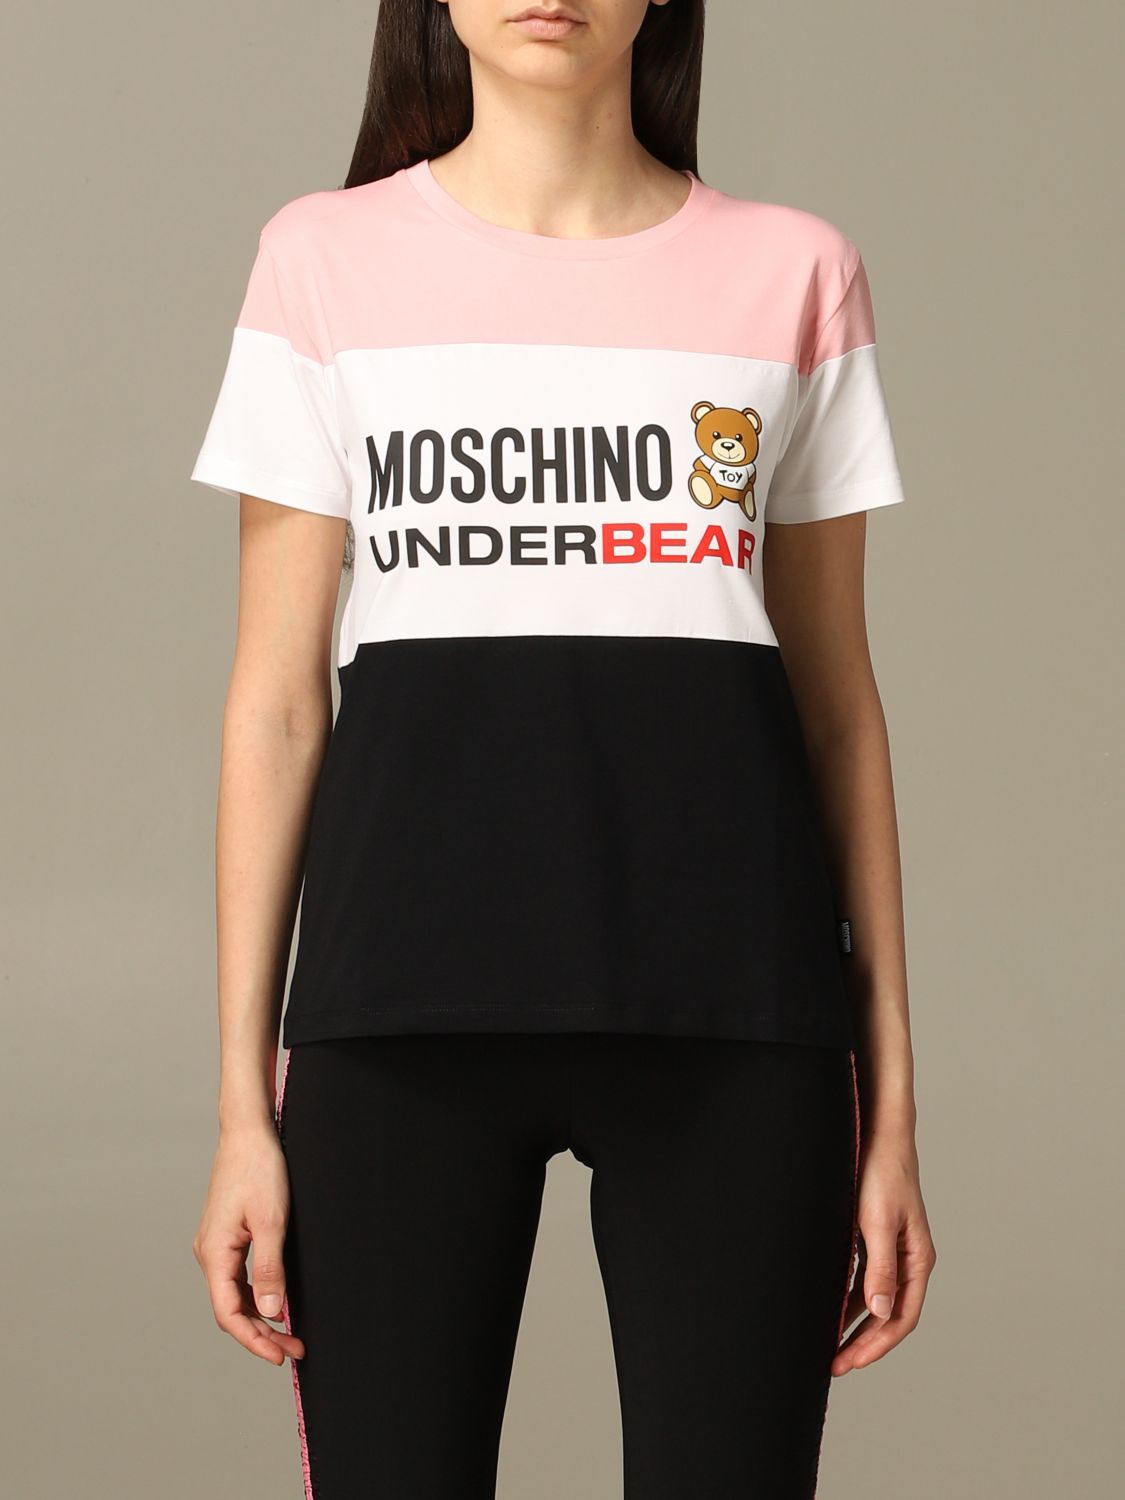 moschino underwear t shirt